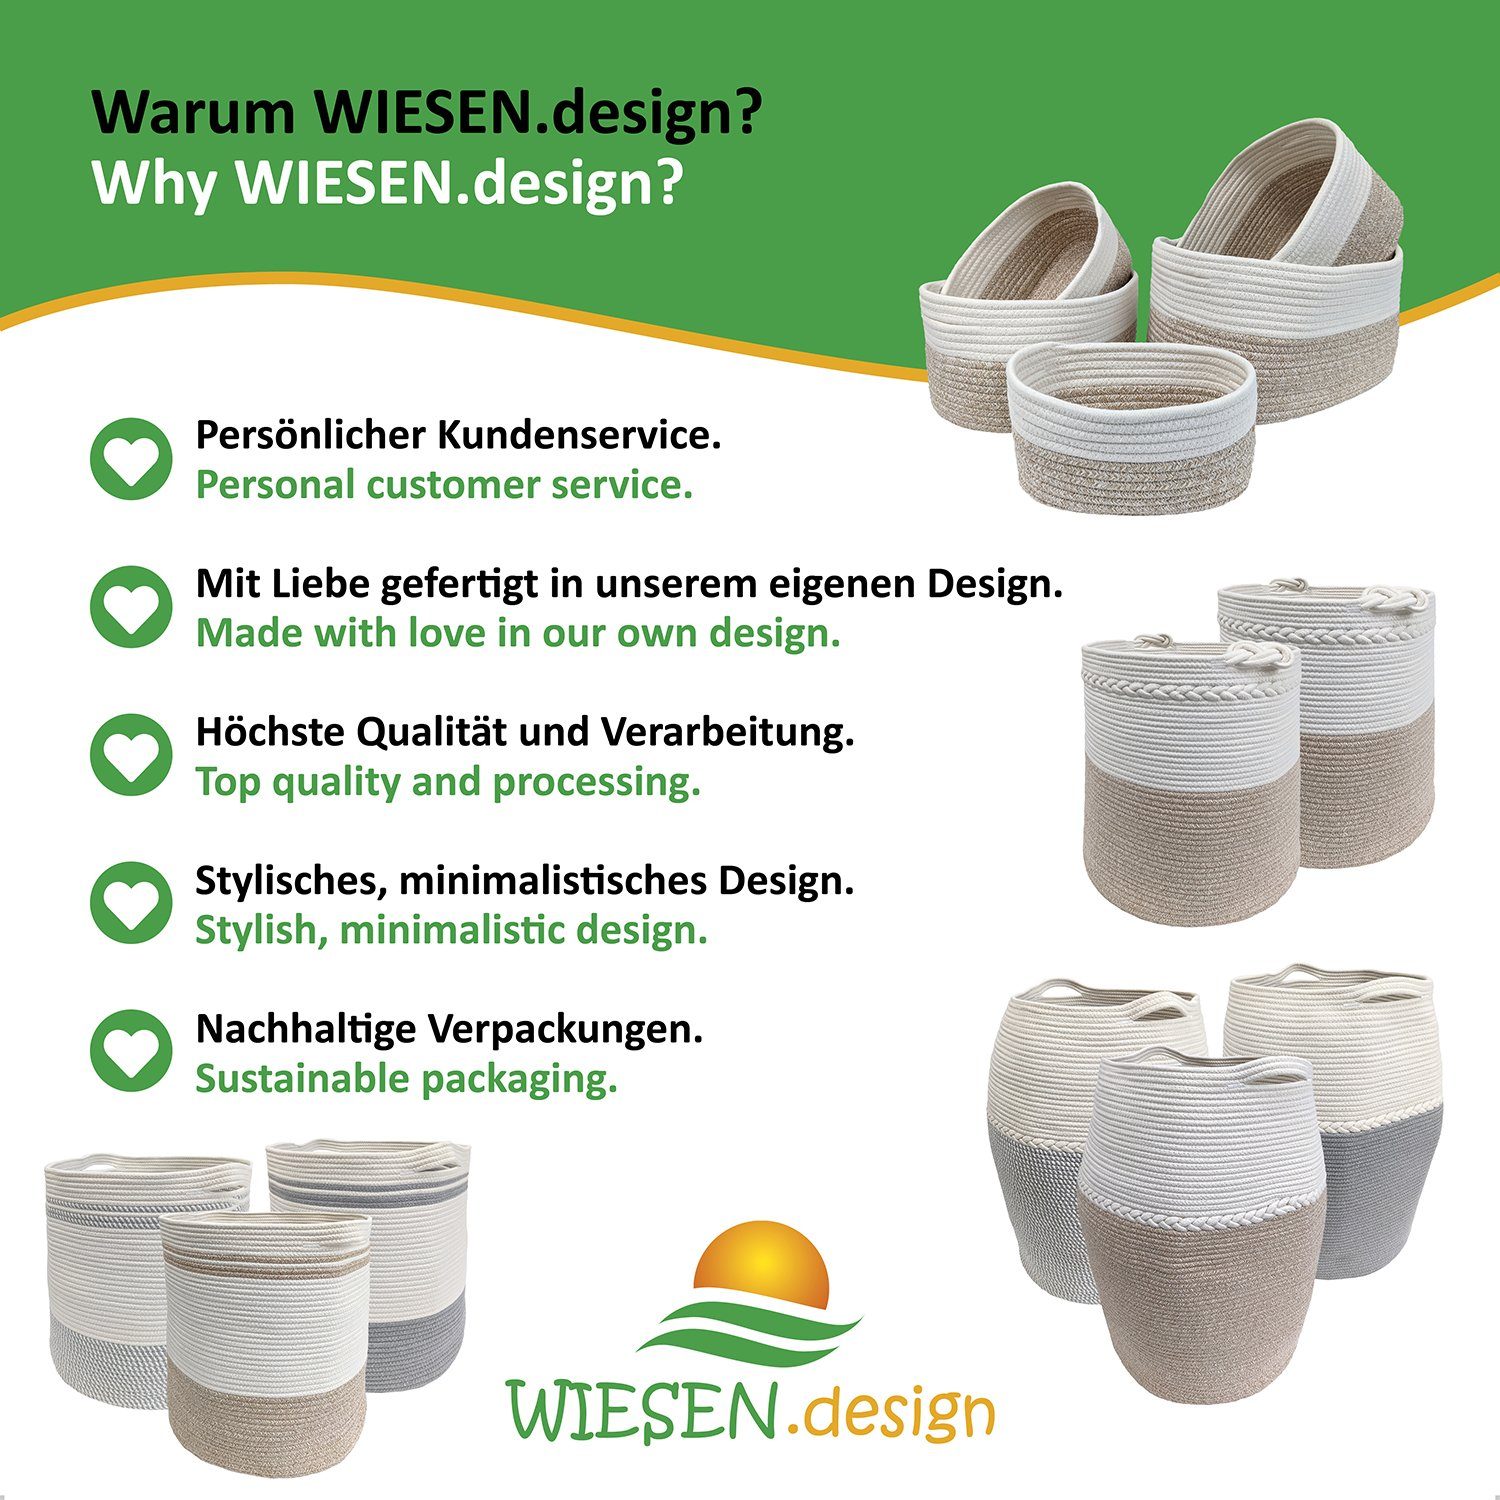 Waschsack WIESEN.design Wäschesack, Hellbraun/Weiß, schwerem großem gratis Baumwolle, 100% Großes-Set, (5-teilig) Versand inkl. Mira Aufbewahrungskorb und Set